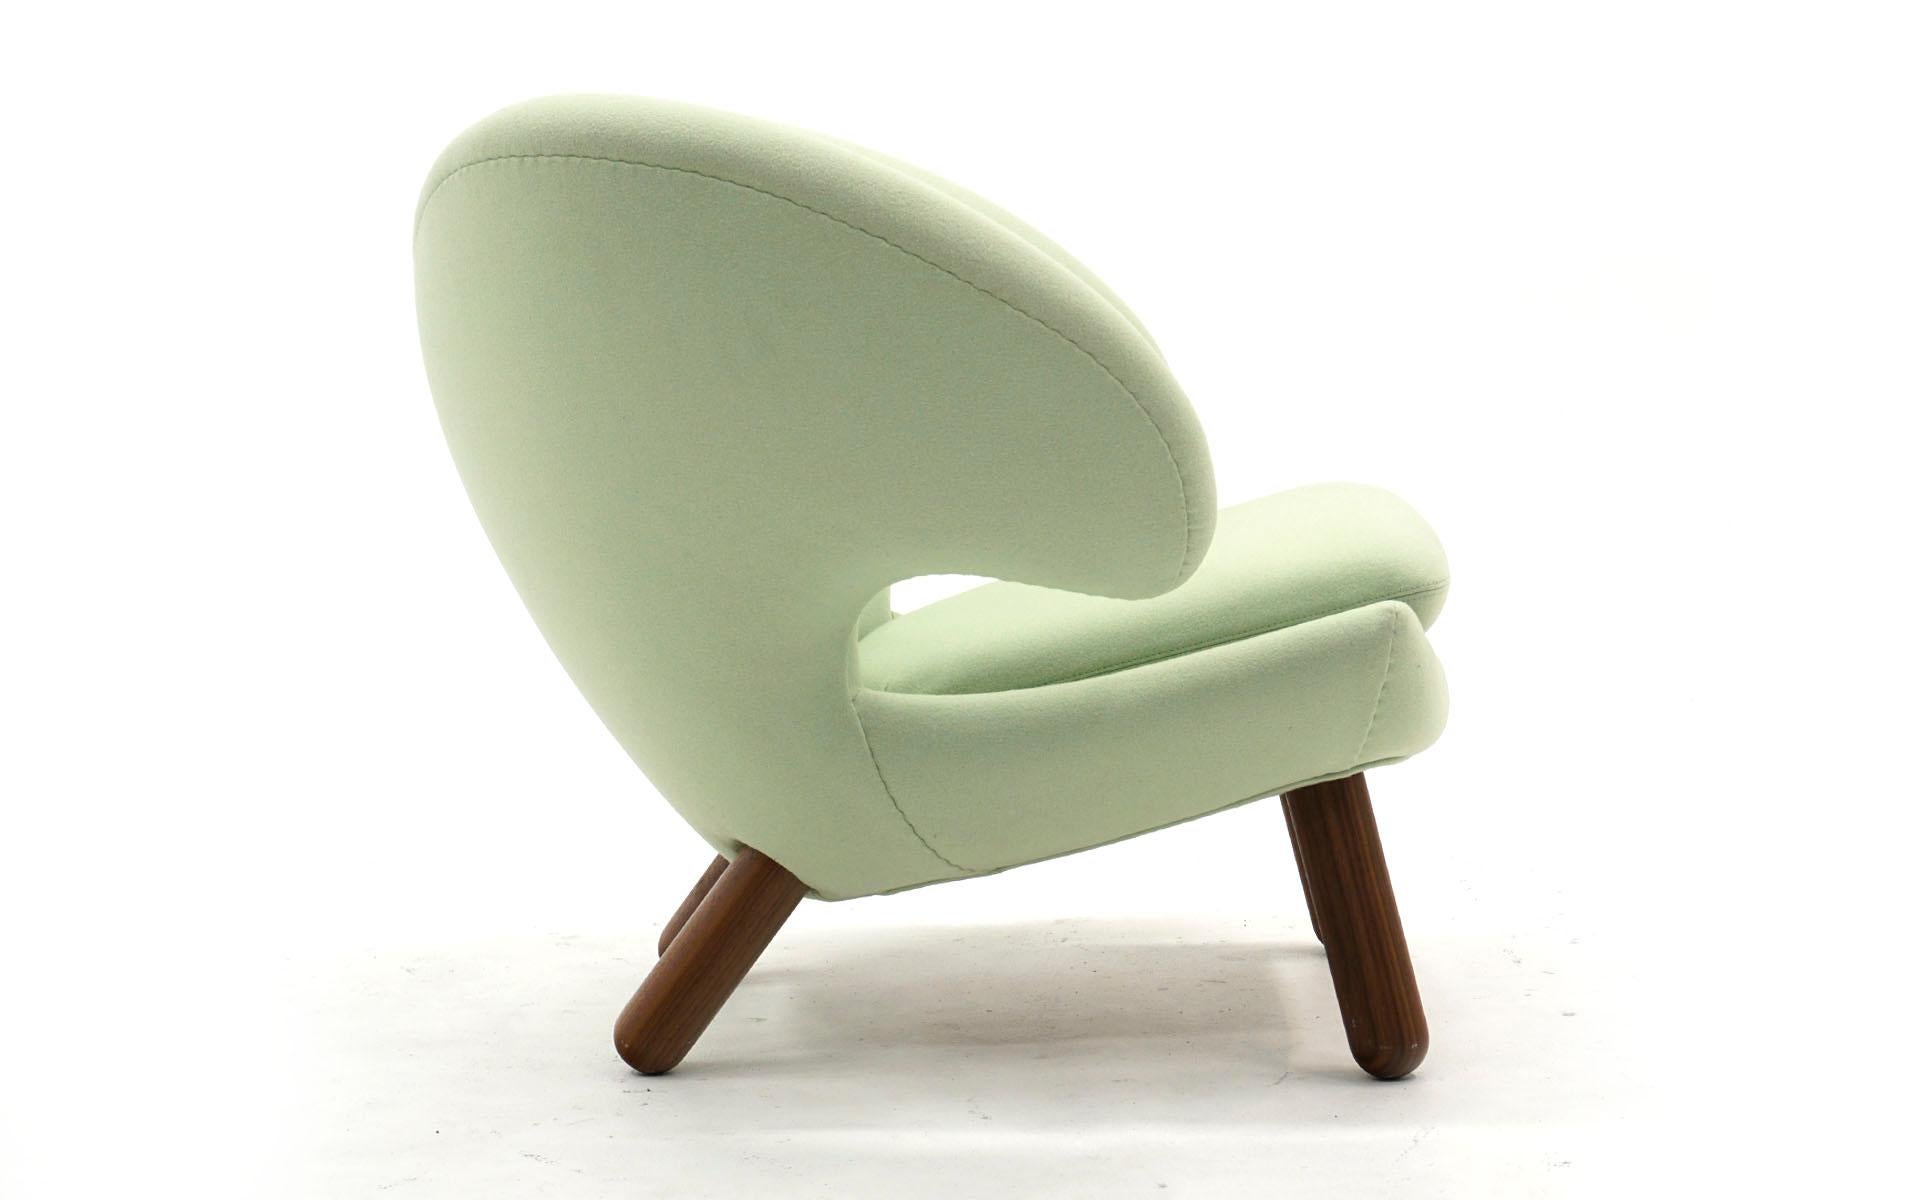 Scandinavian Modern Authentic Finn Juhl Pelican Chair by Onecollection, Denmark, Light Mint Green